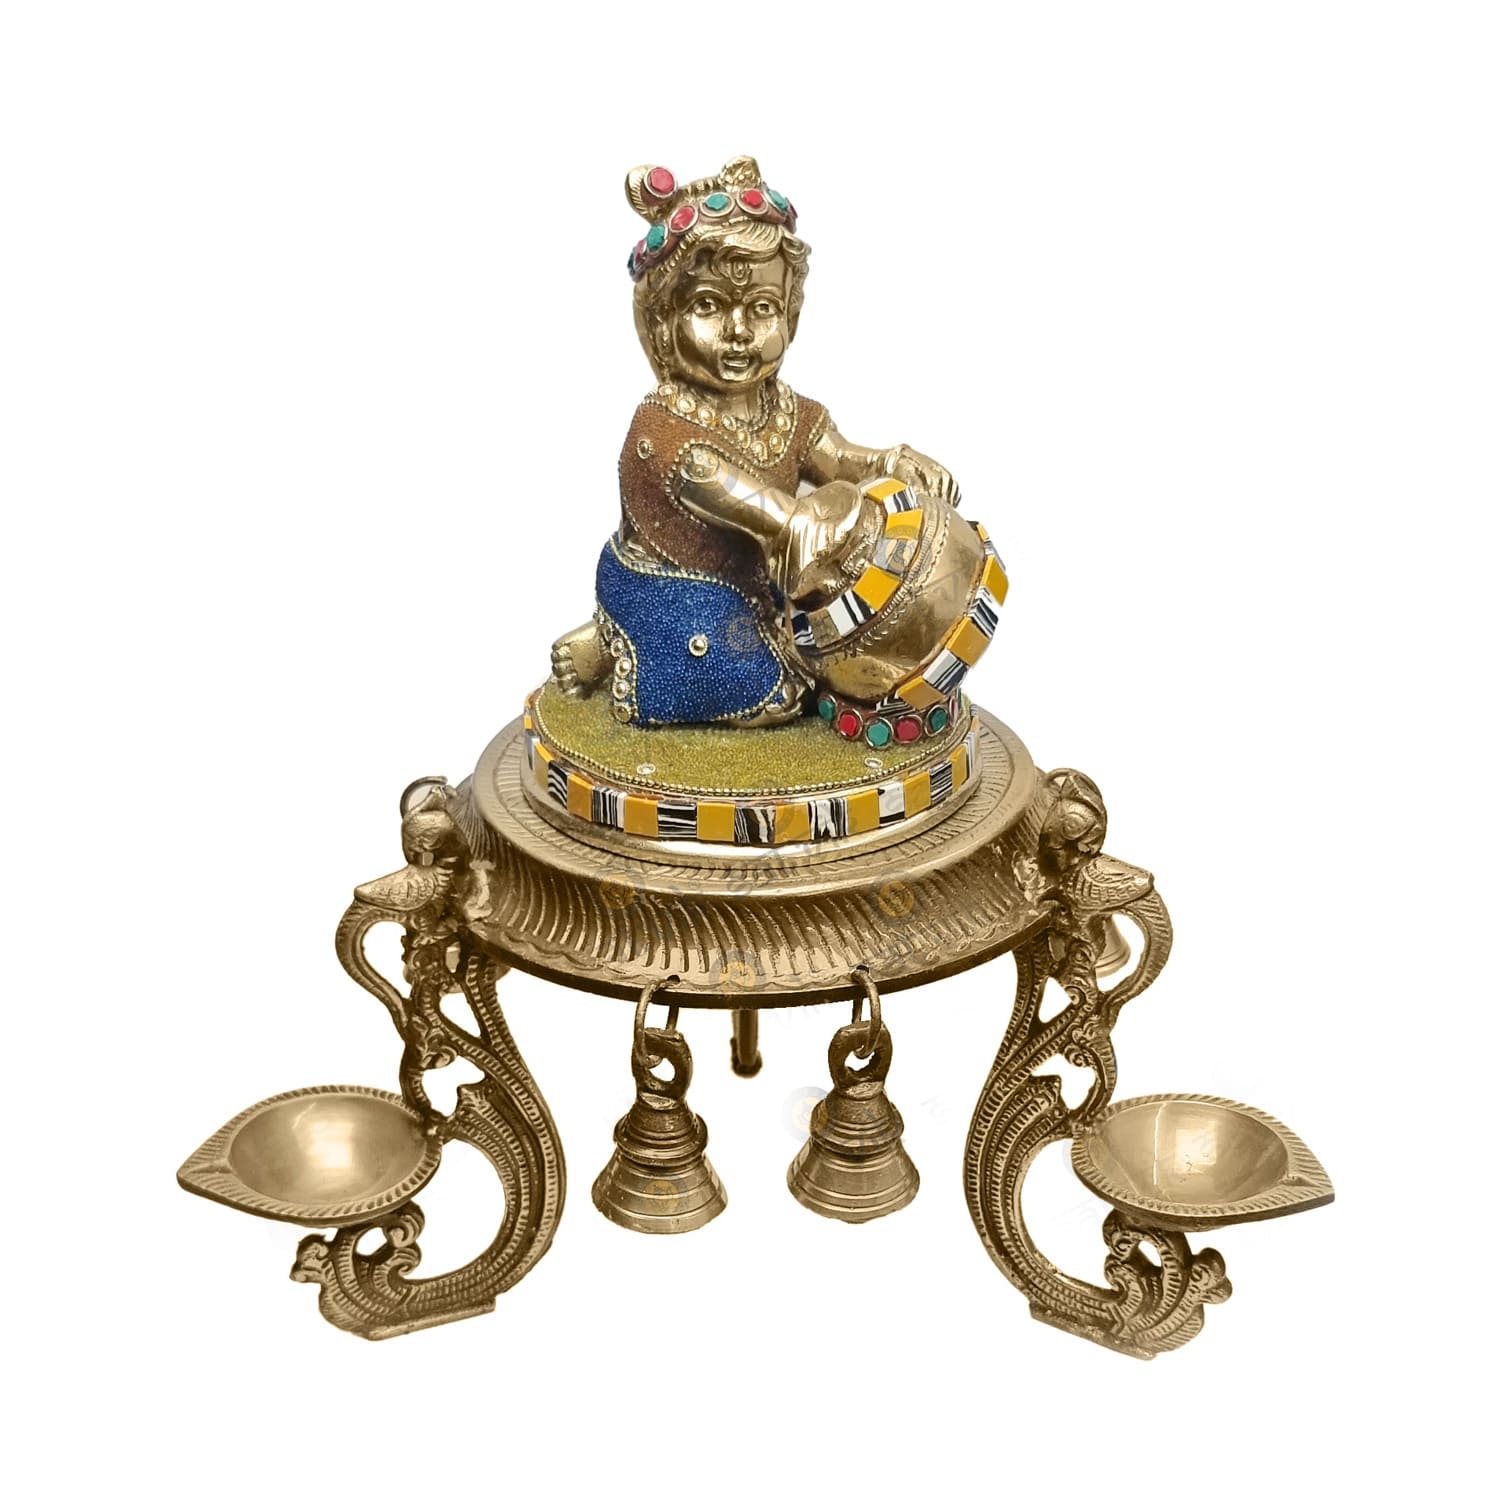 Decorative Brass Laddu Gopal with Chowki